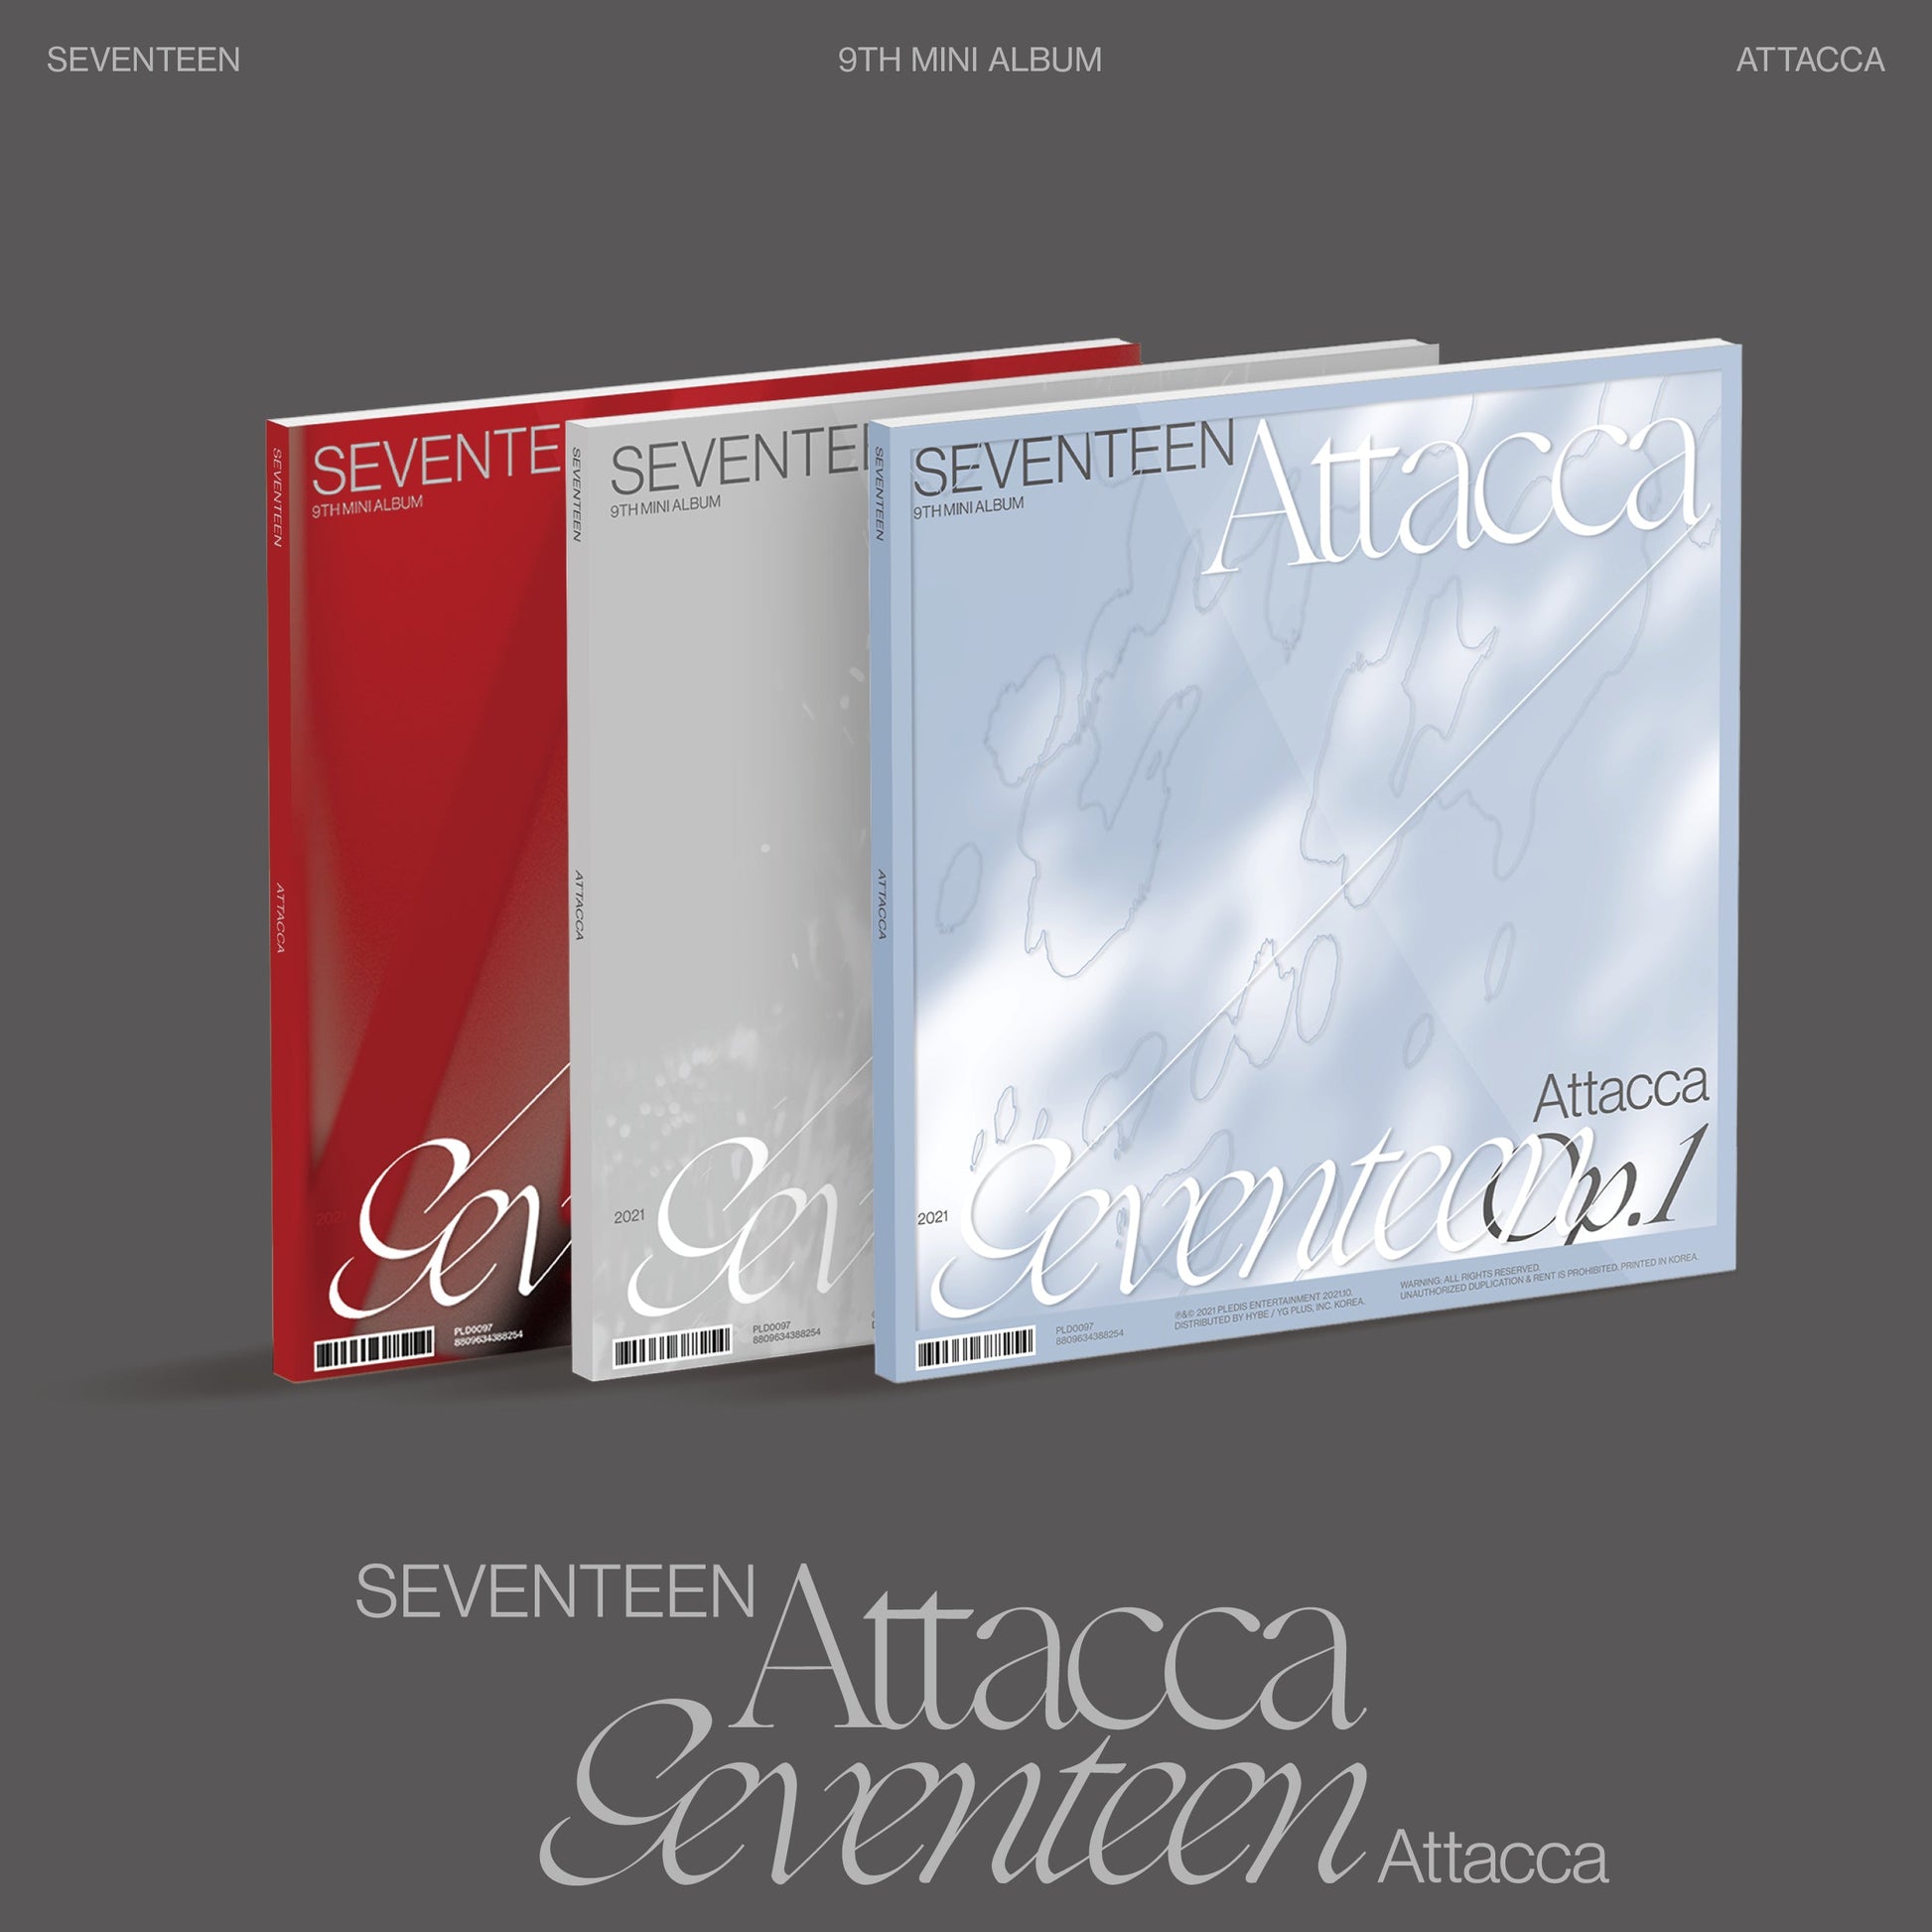 SEVENTEEN 9TH MINI ALBUM 'ATTACCA' set cover